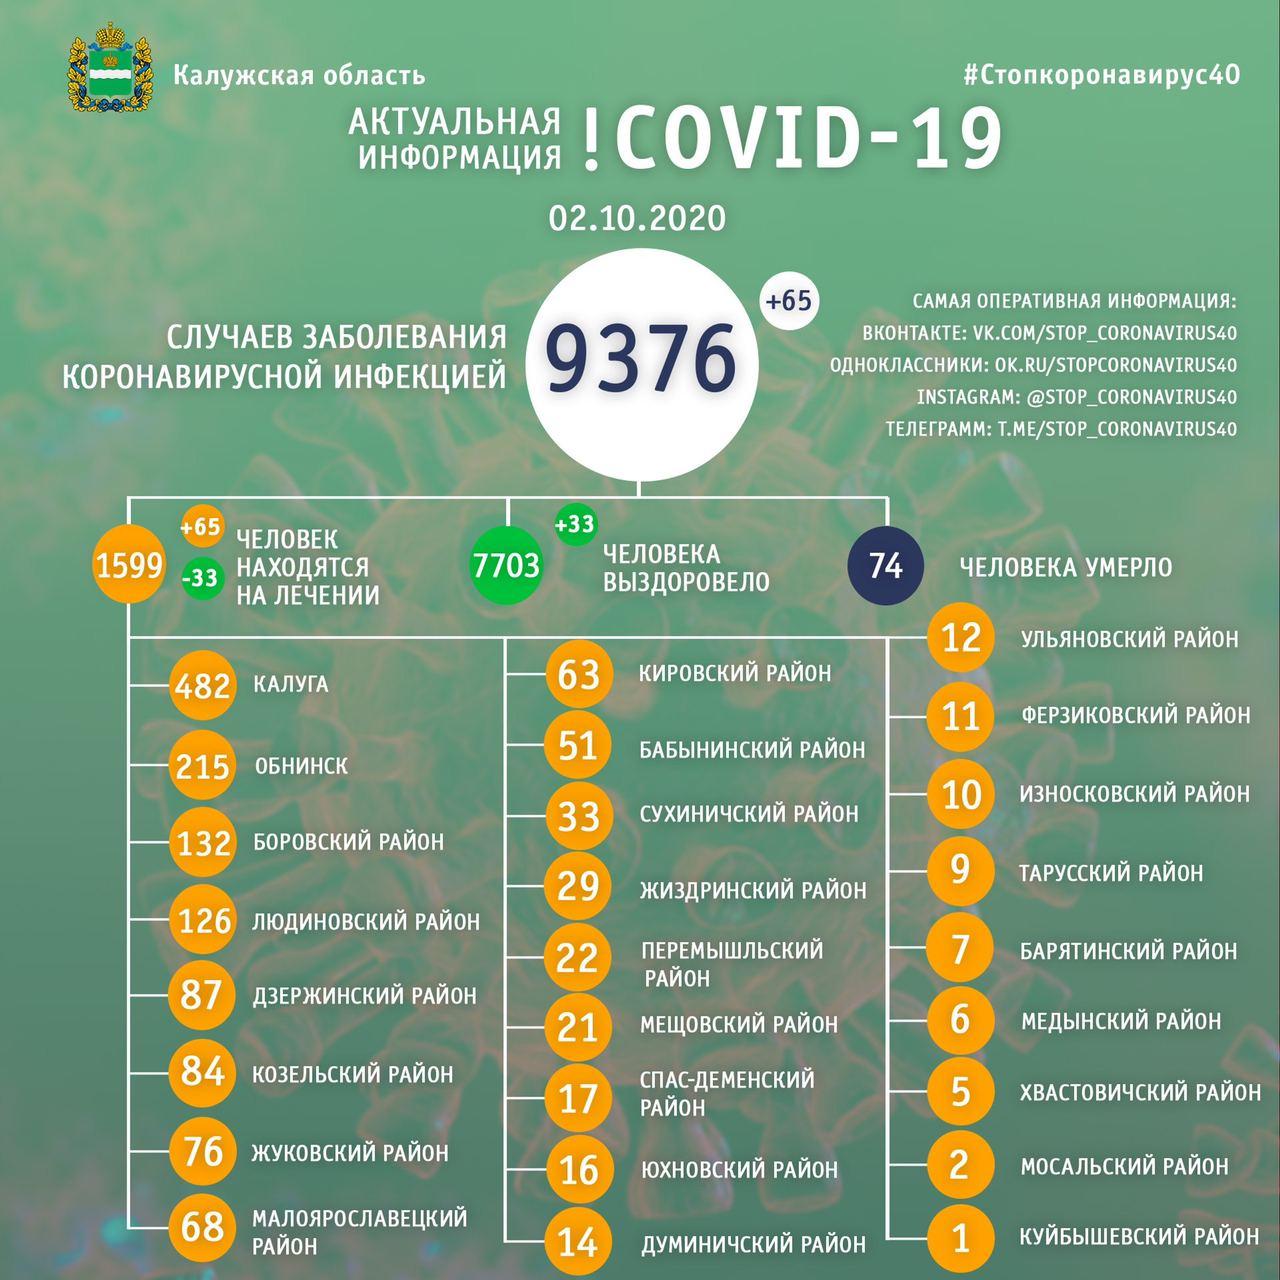 Официальная статистика по коронавирусу в Калужской области на 2 октября 2020 года.